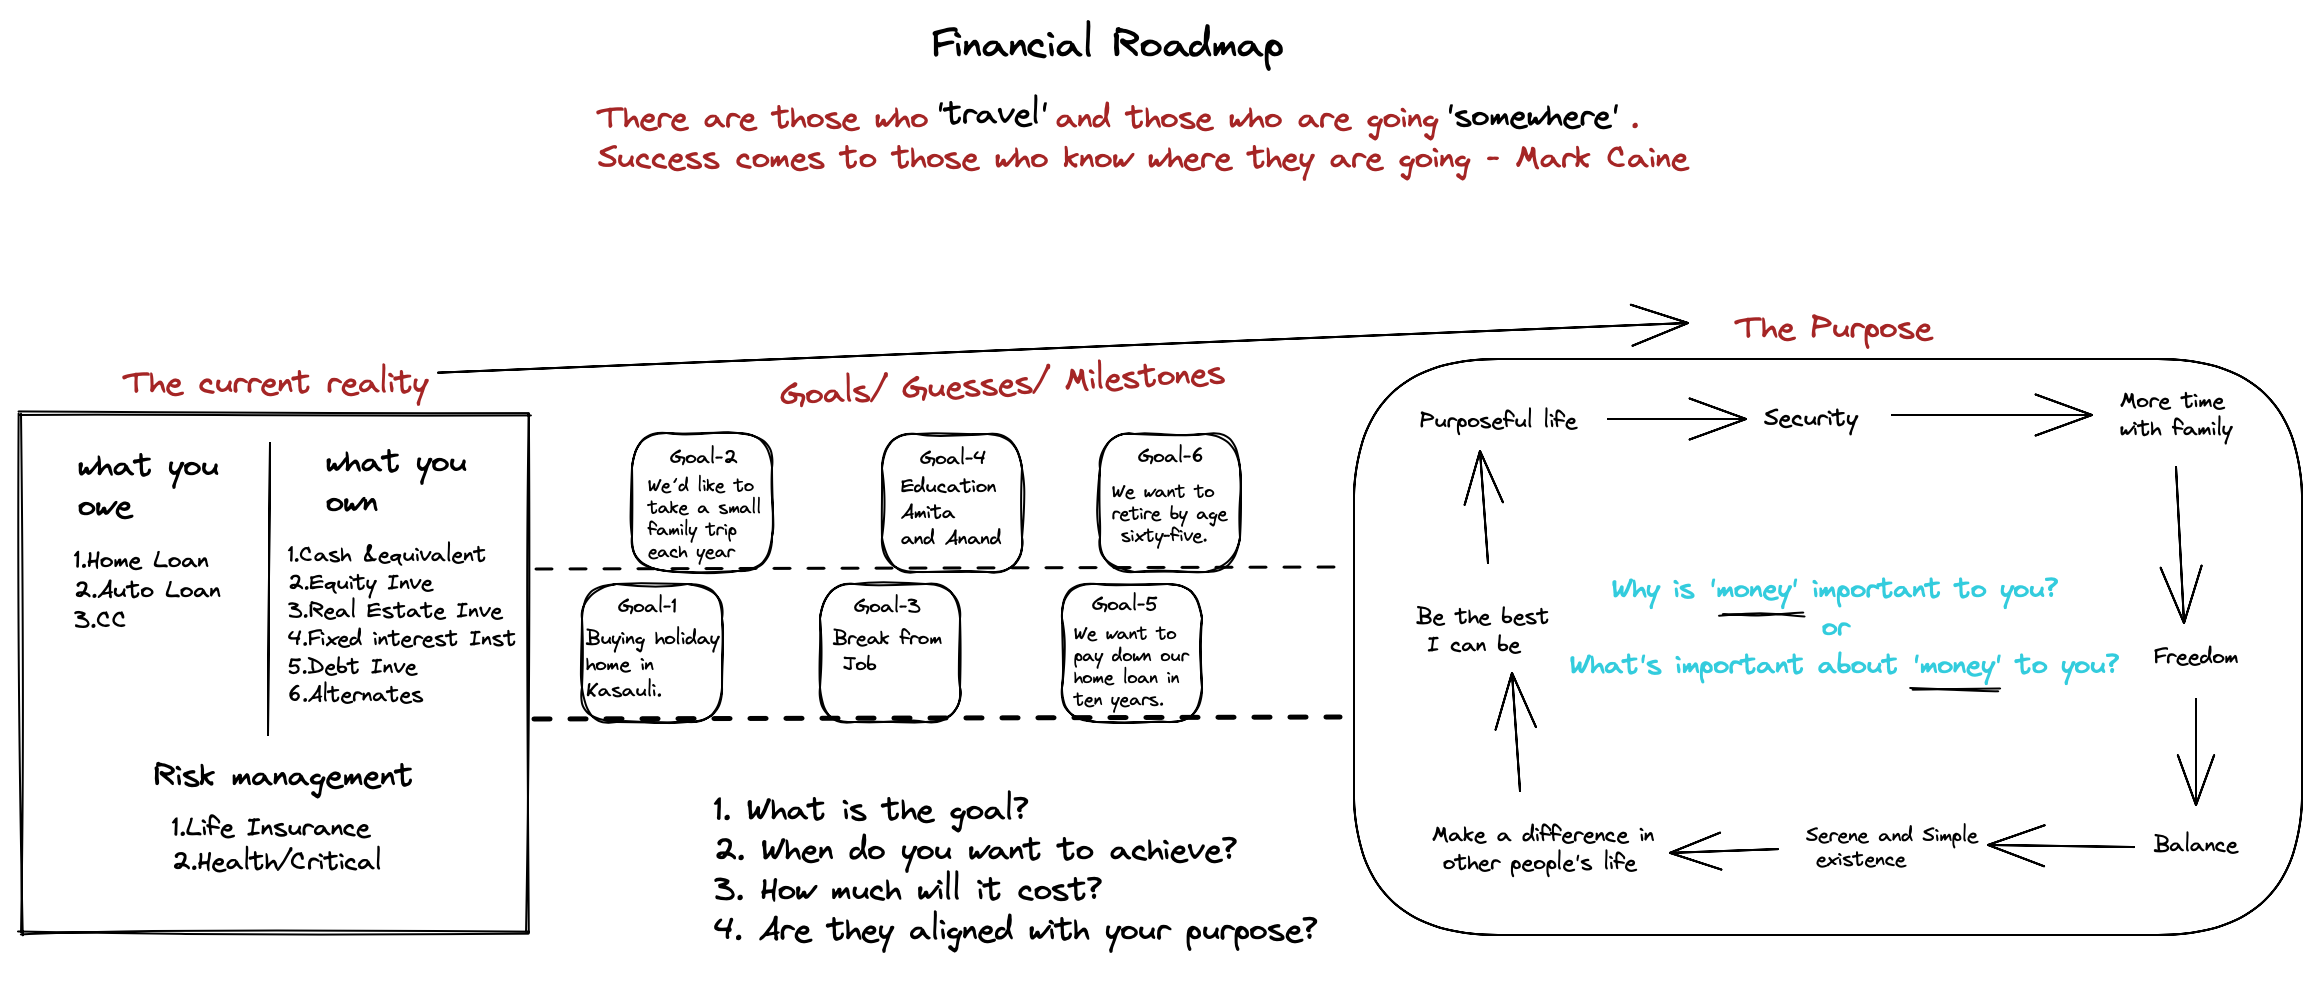 Financial Roadmap